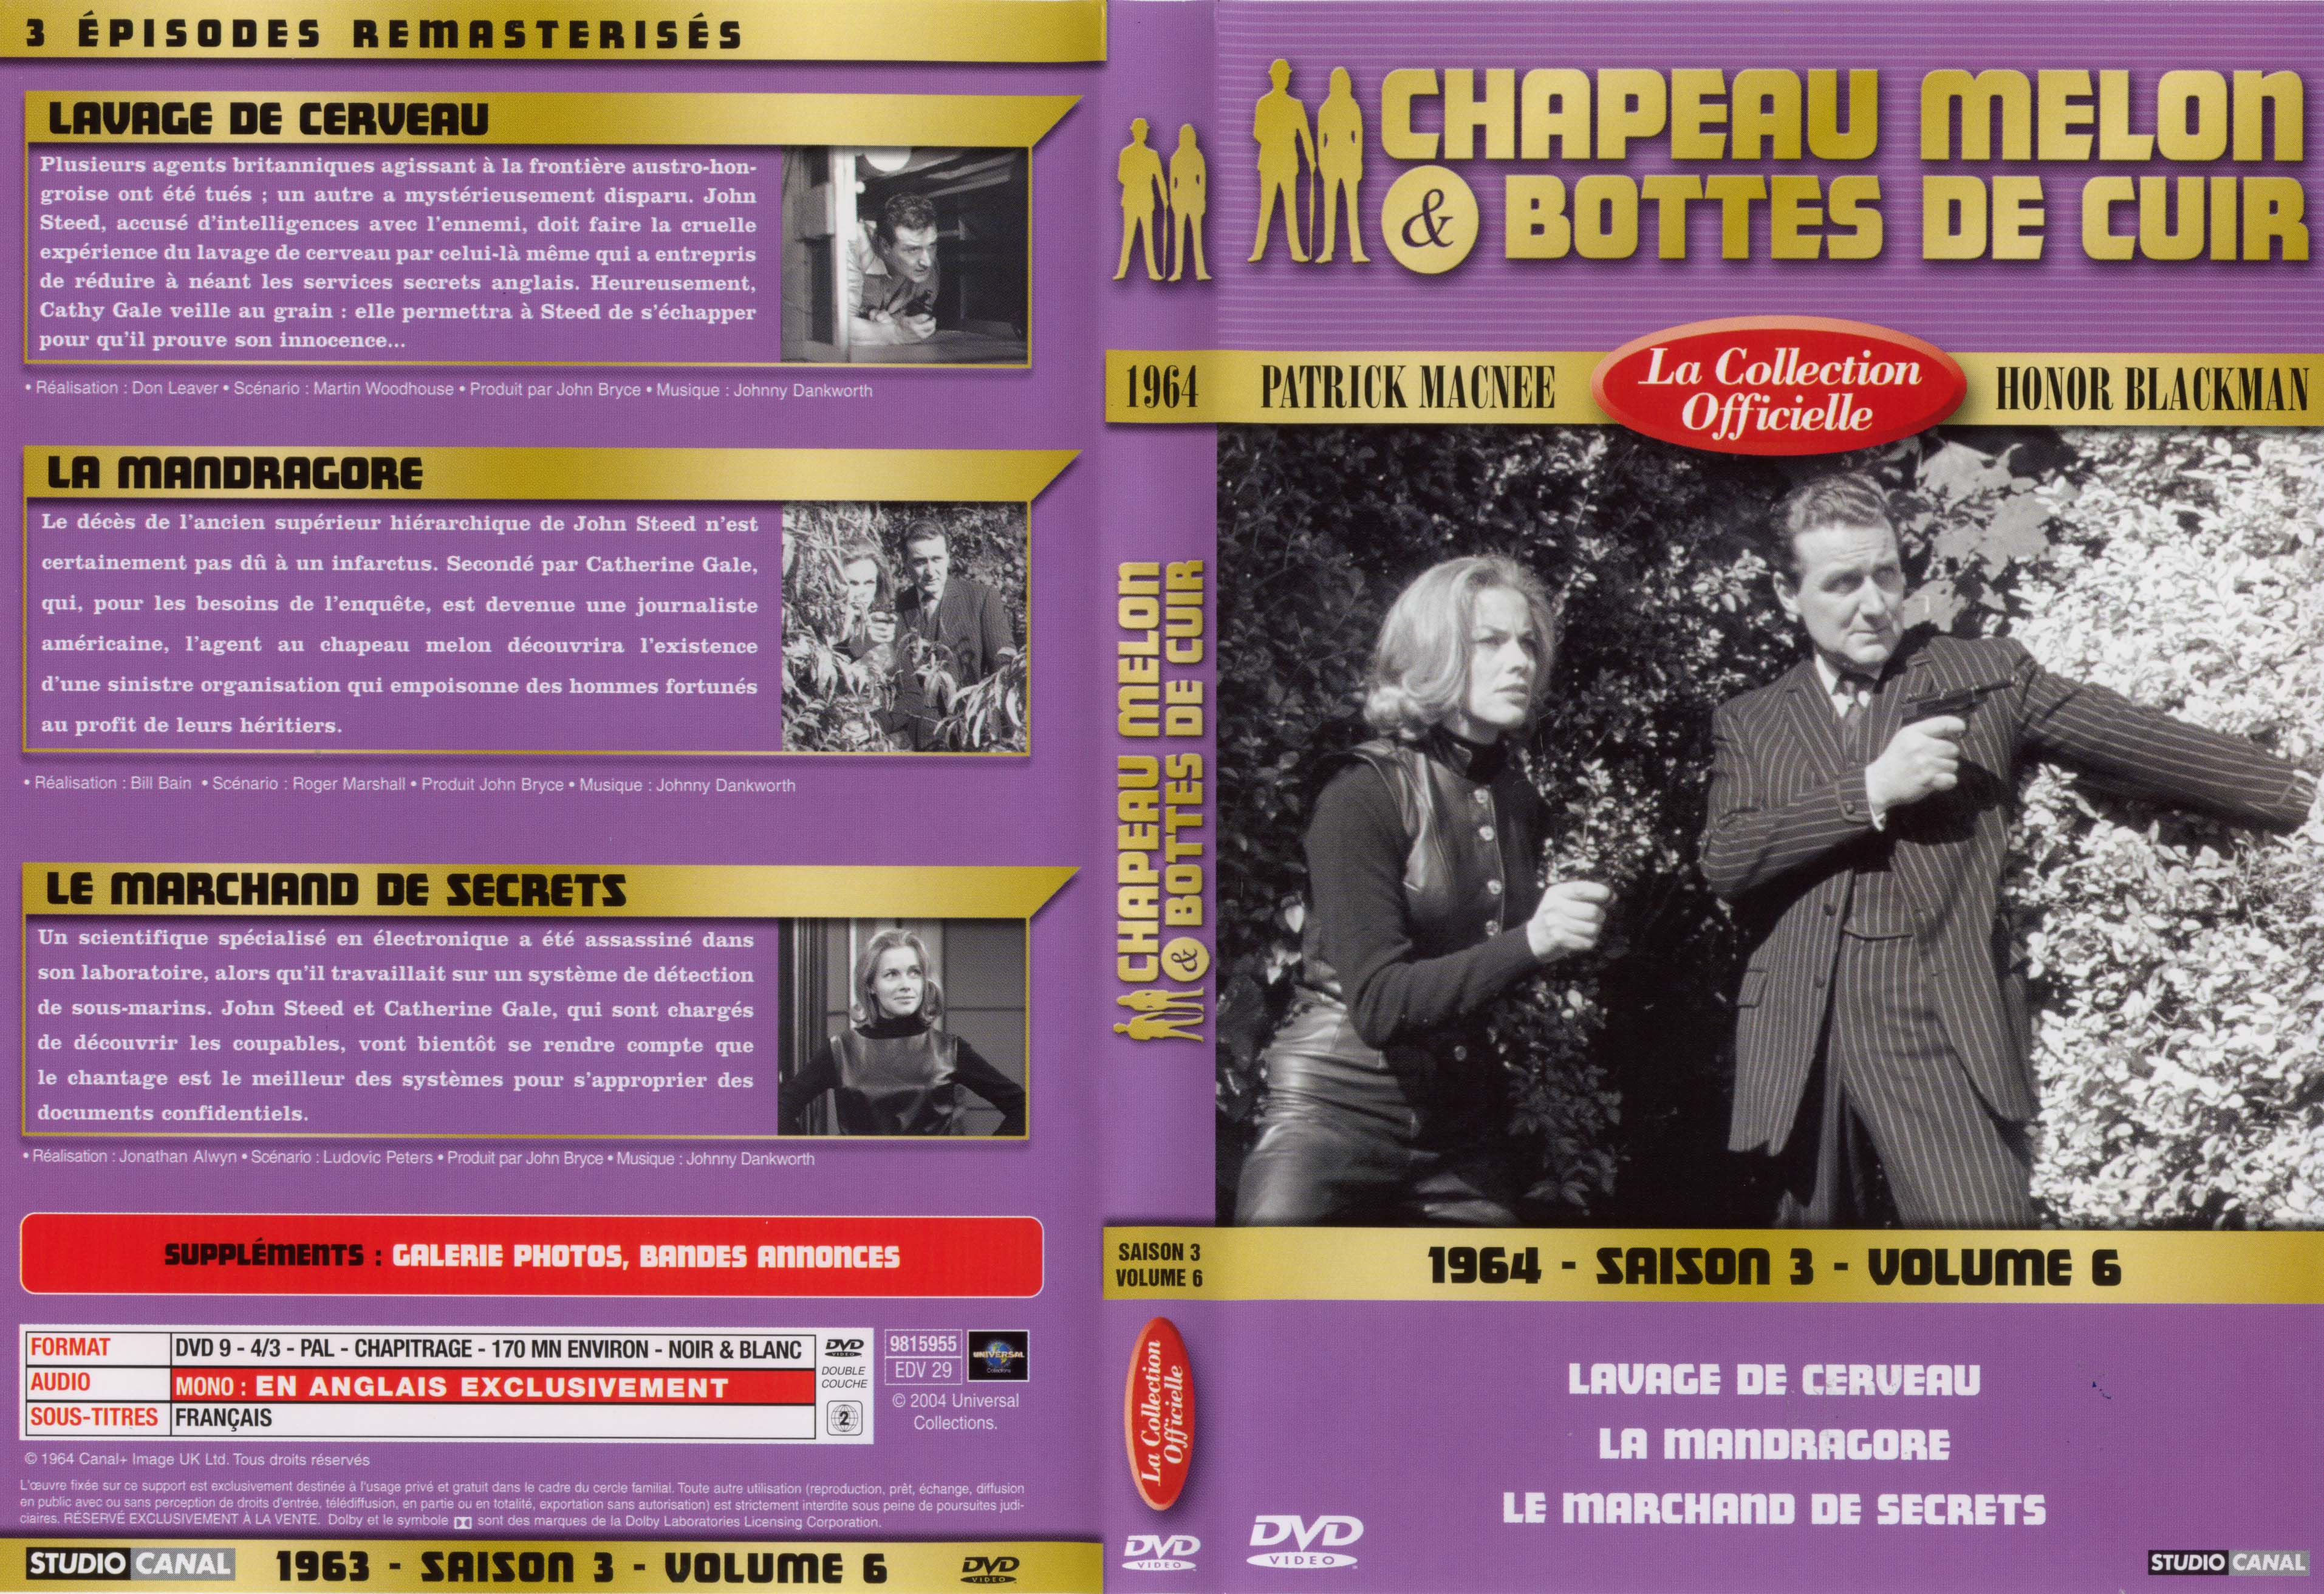 Jaquette DVD Chapeau melon et bottes de cuir 1964 saison 3 vol 6